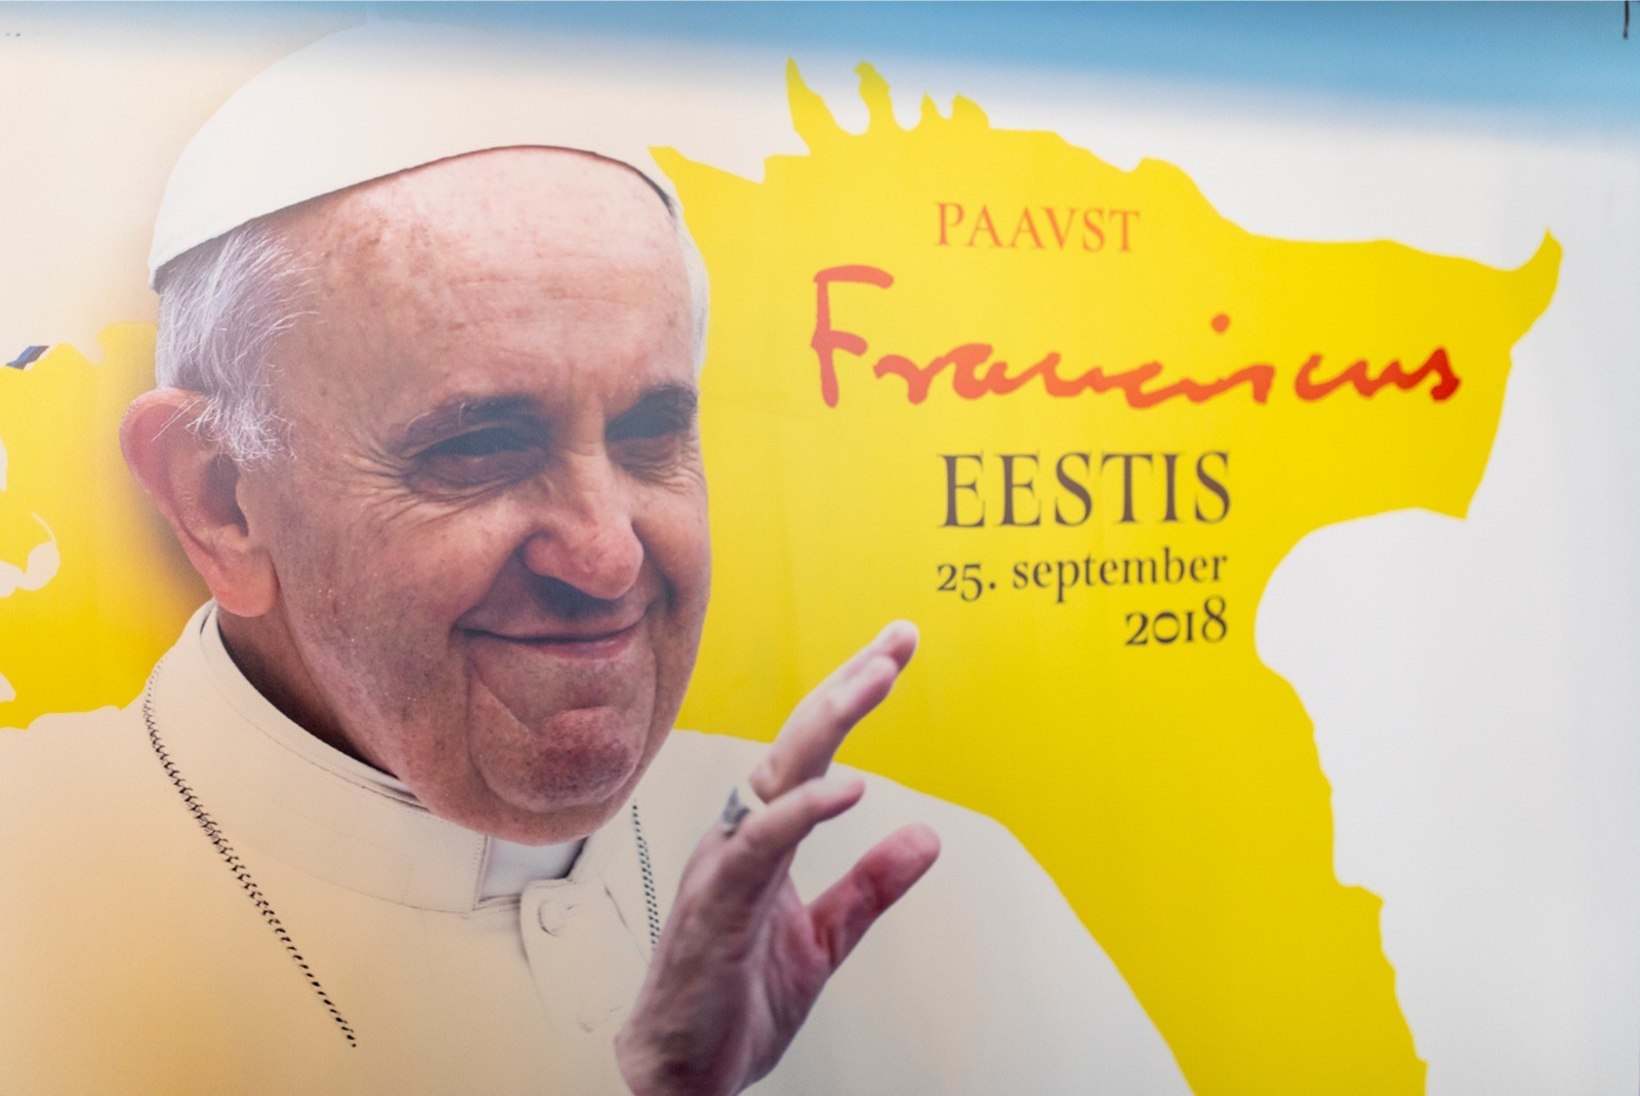 KURB UUDIS: uskmatud paavsti missal tasuta veini ei saa